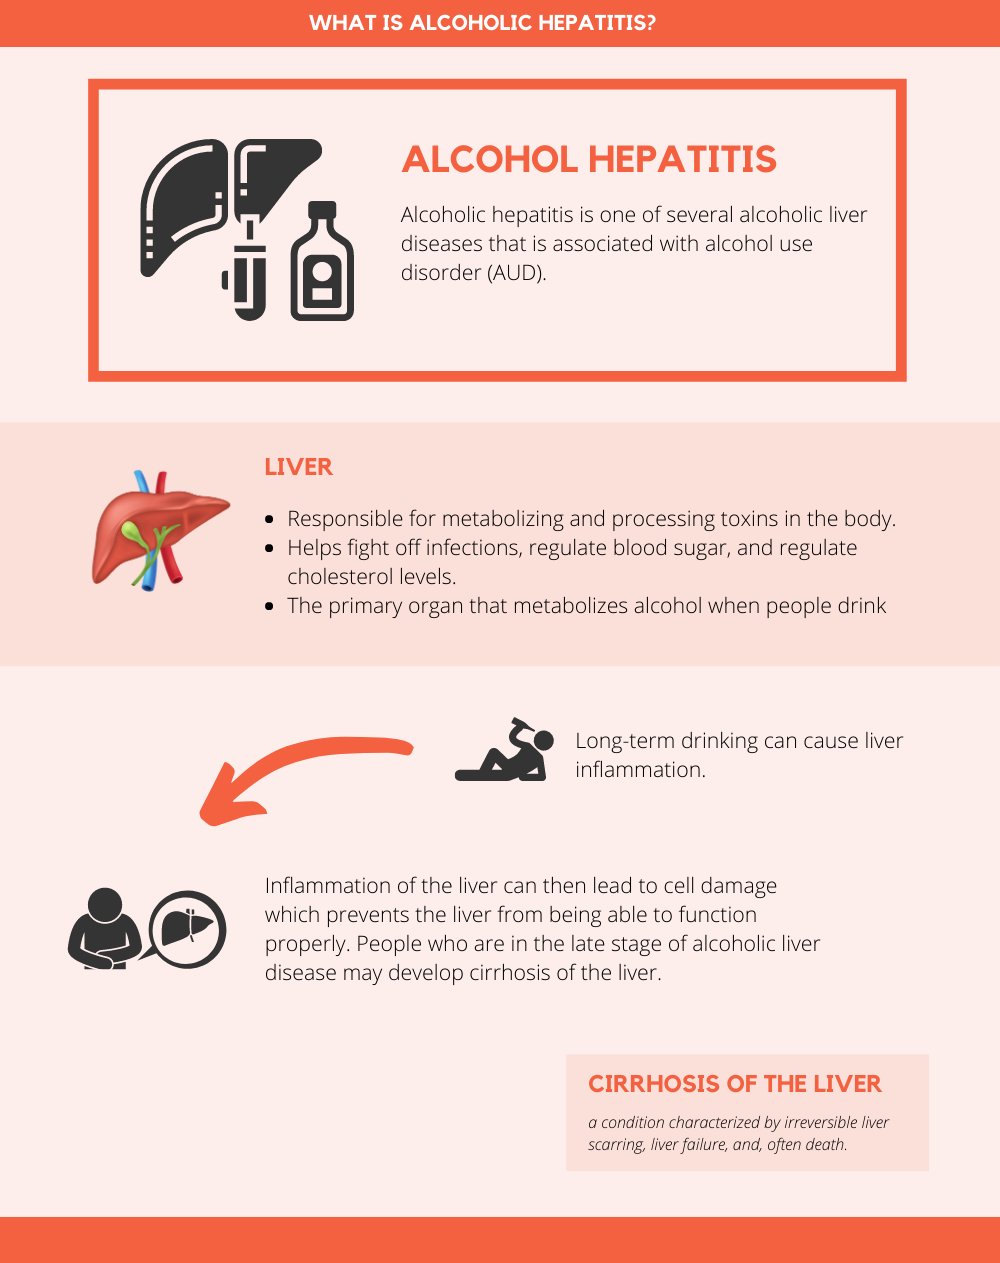 Alcohol hepatitis